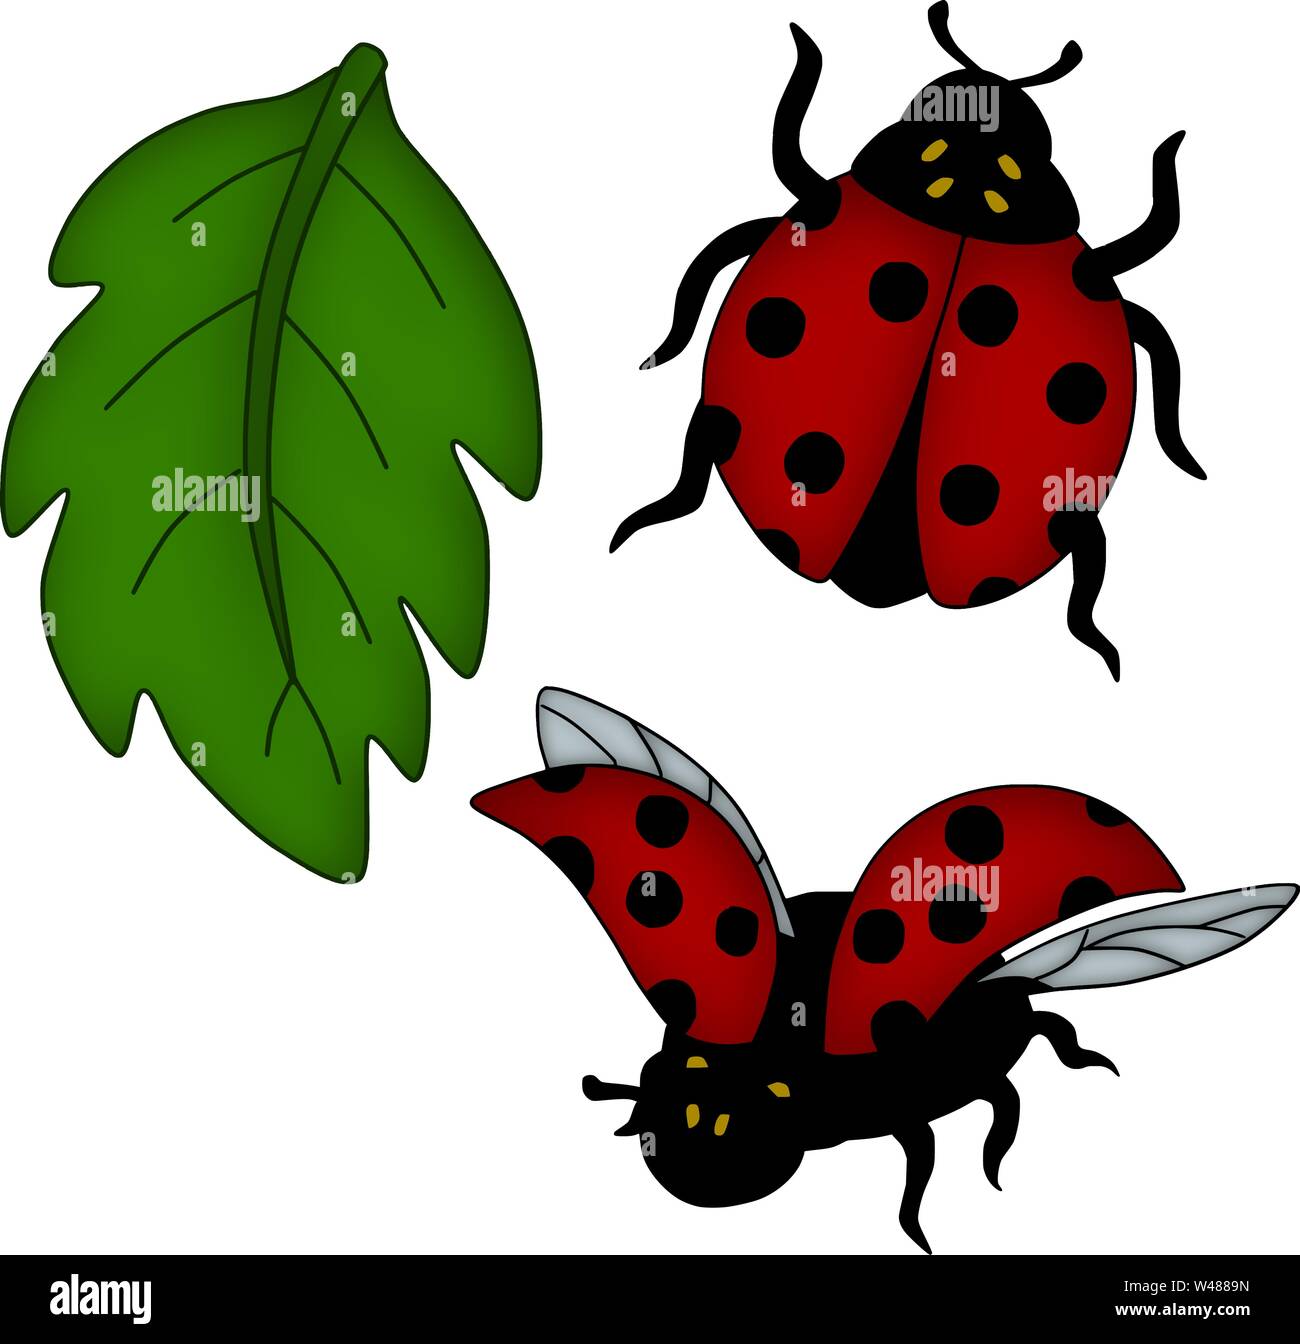 Ladybug costume Immagini senza sfondo e Foto Stock ritagliate - Alamy